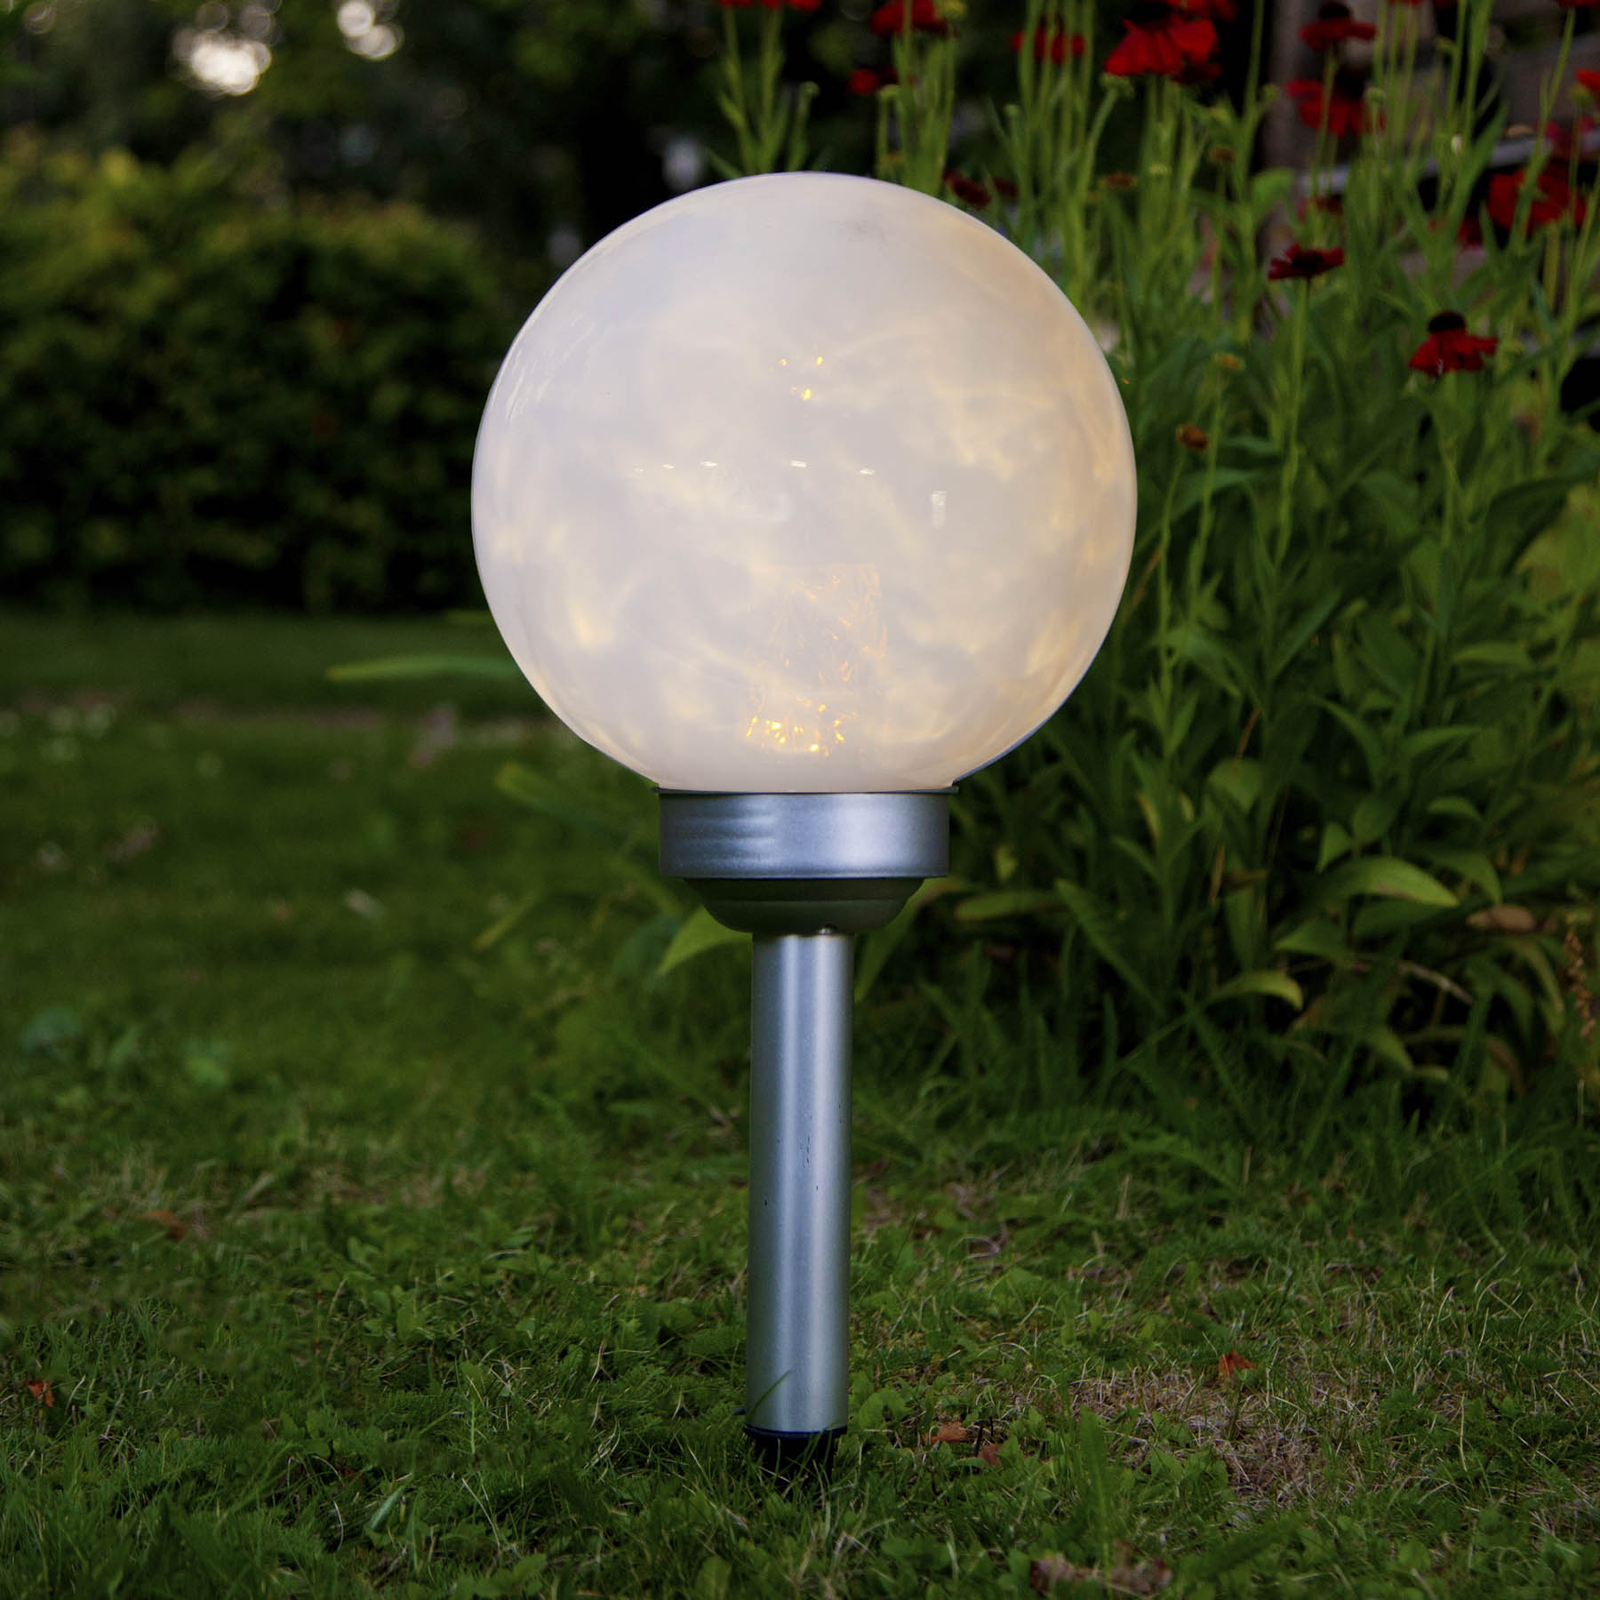 Toneelschrijver einde Circulaire LED lamp op zonne-energie Lunay, draaiende lamp | Lampen24.nl